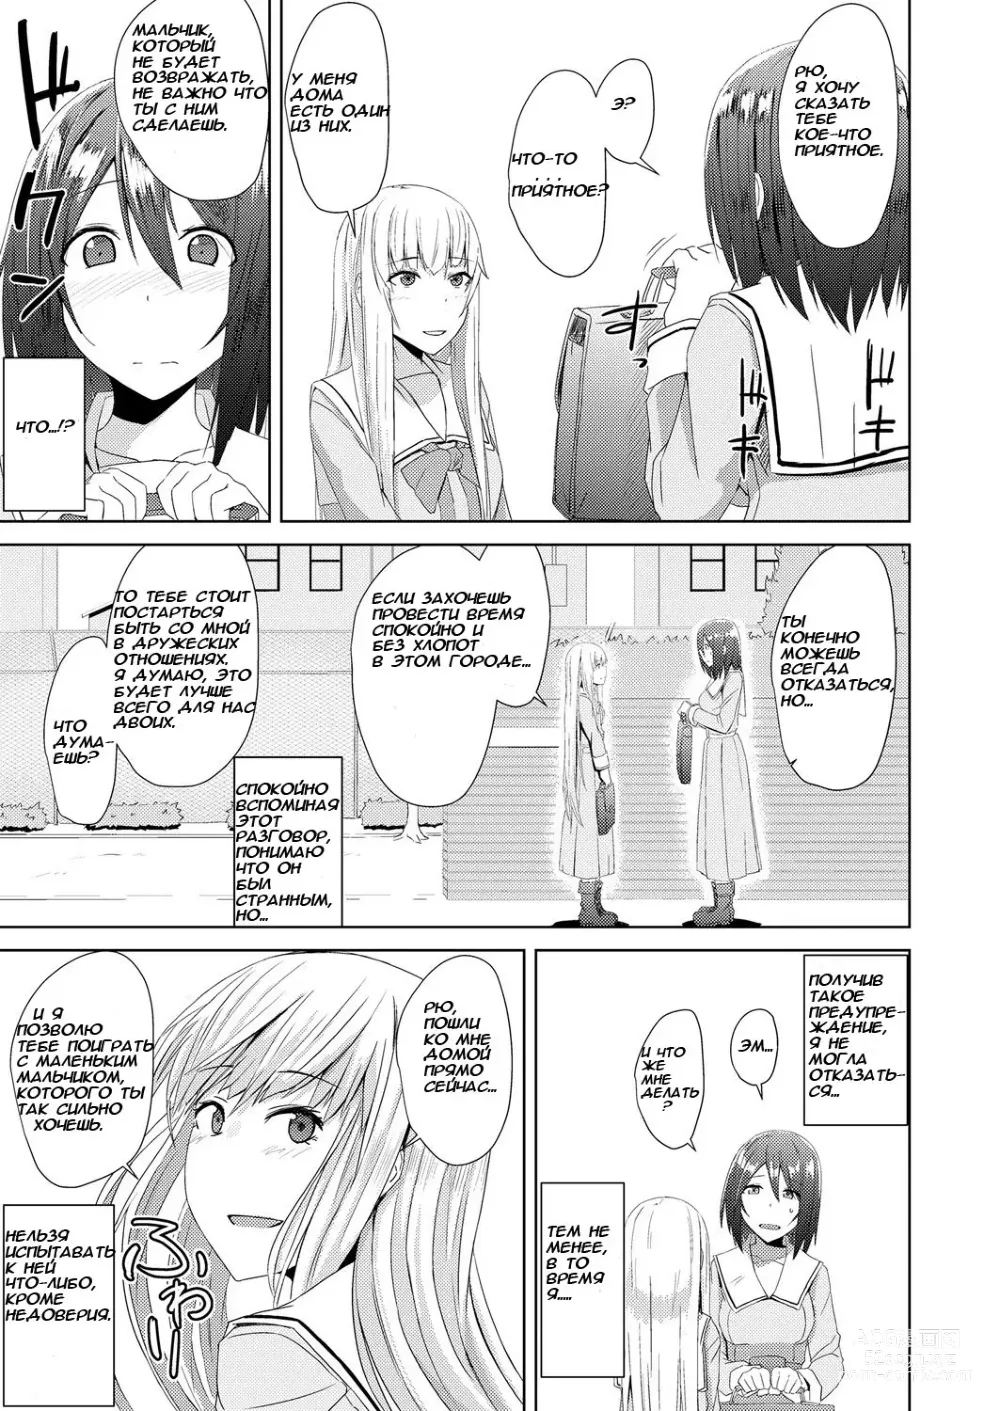 Page 3 of manga Watashitachi no Kizashi